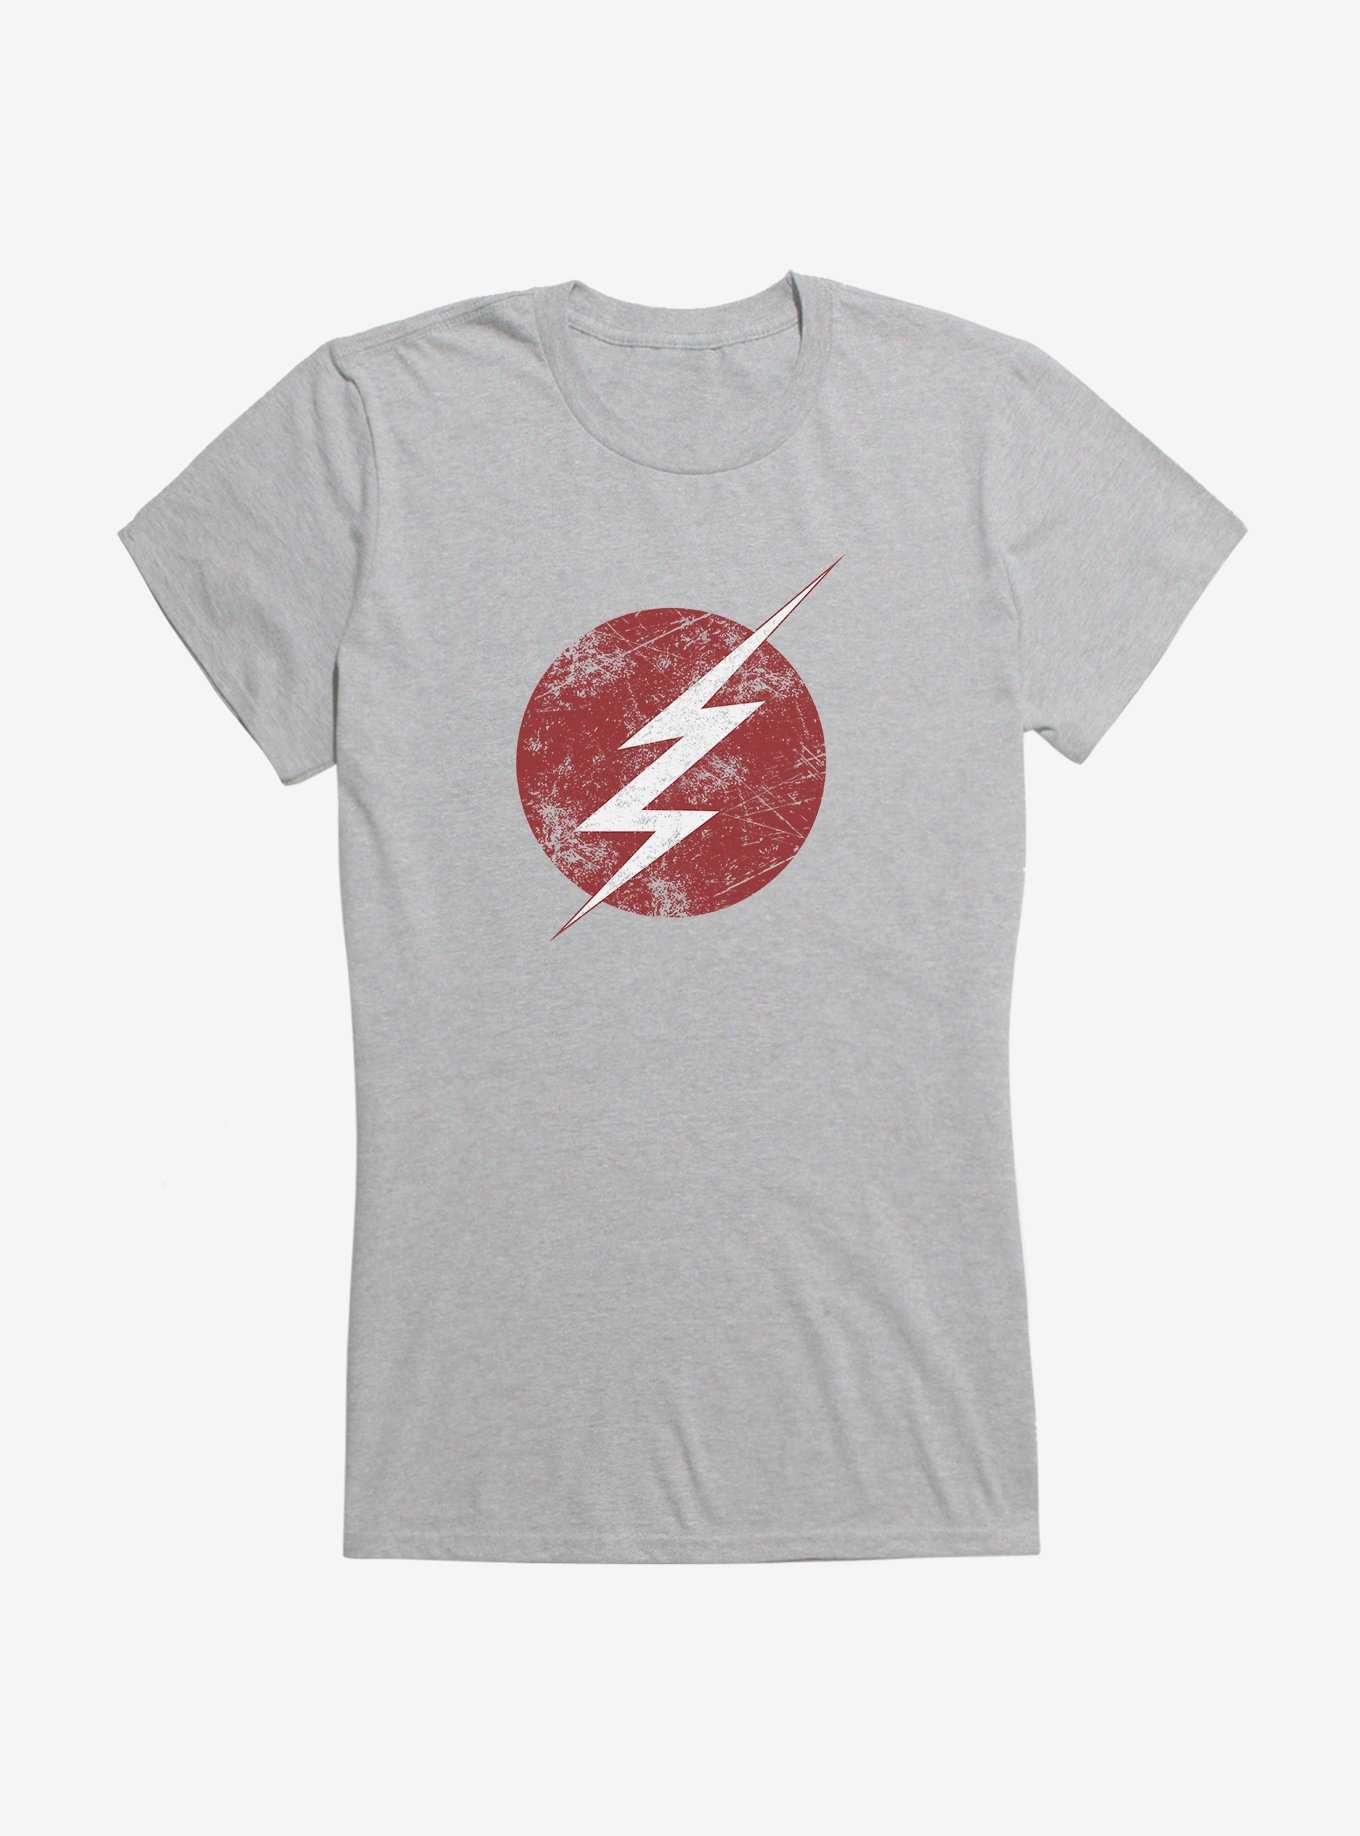 DC Comics The Flash Distressed Bolt Girls T-Shirt, , hi-res